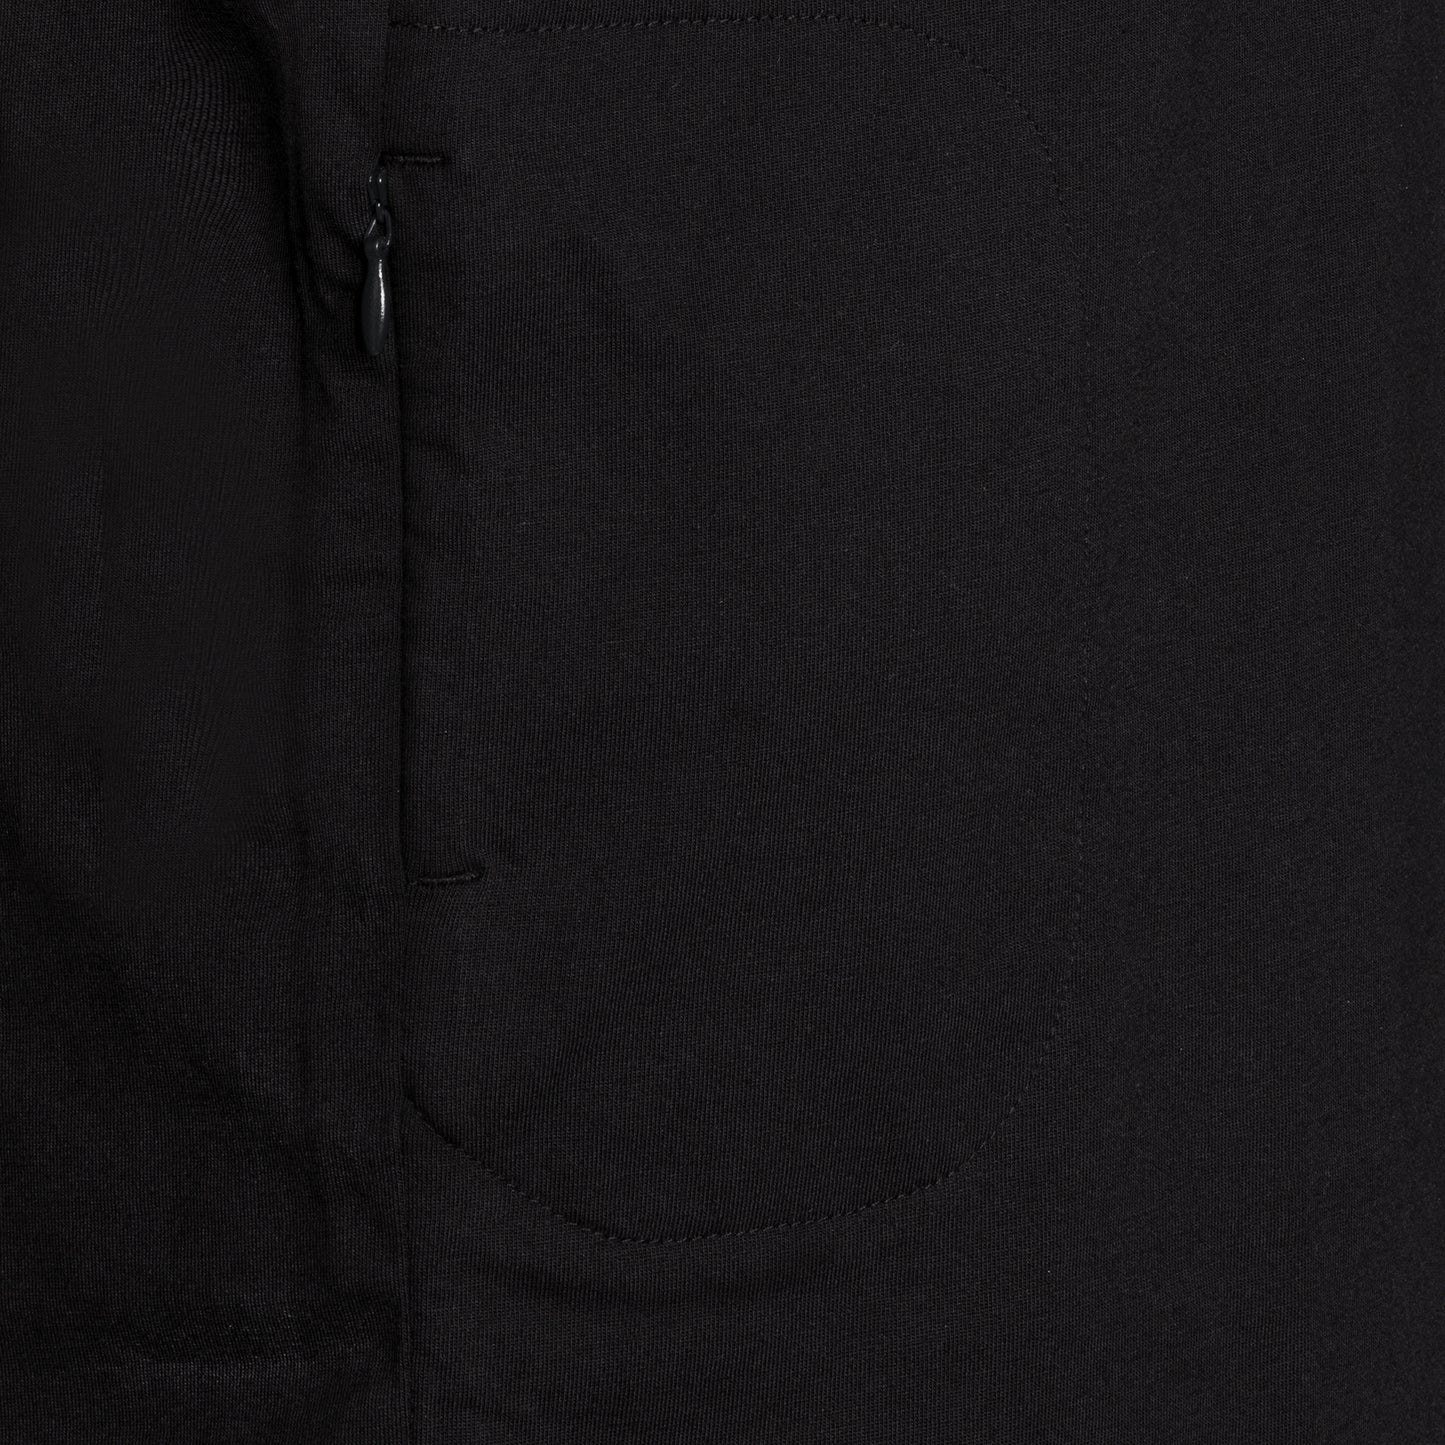 SPYSCAPE Asset T-Shirt with Hidden Zip Pocket - Close up view of Hidden pocket